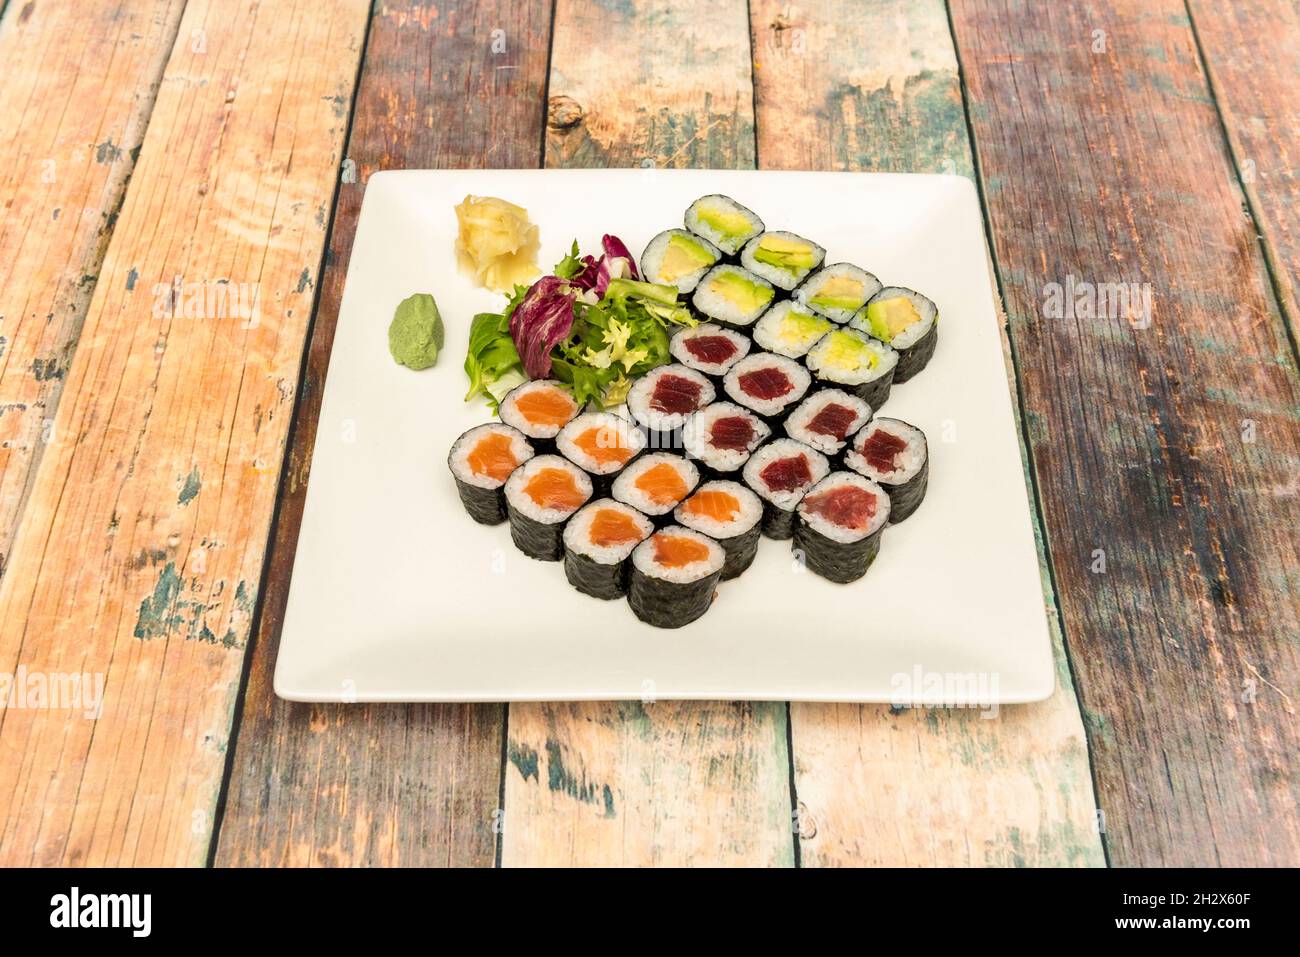 Assortiment de sushis maki de thon rouge, avocat mûr, saumon norvégien, riz blanc au vinaigre japonais, wasabi, ginseng et algues nori Banque D'Images